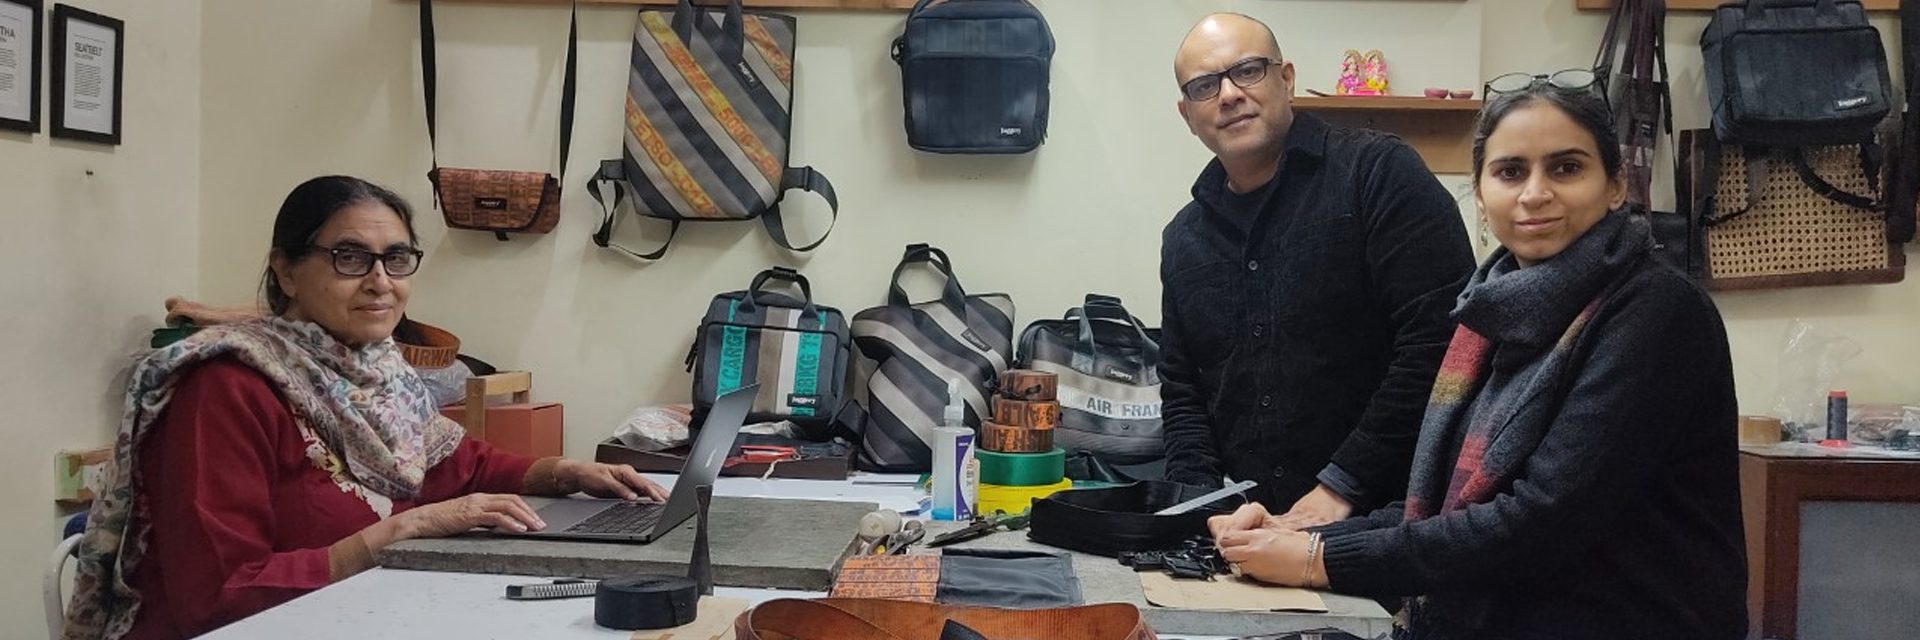 "Spingere" la sostenibilità: come vanno di moda le borse ecologiche dell'imprenditore sociale Gautam Malik